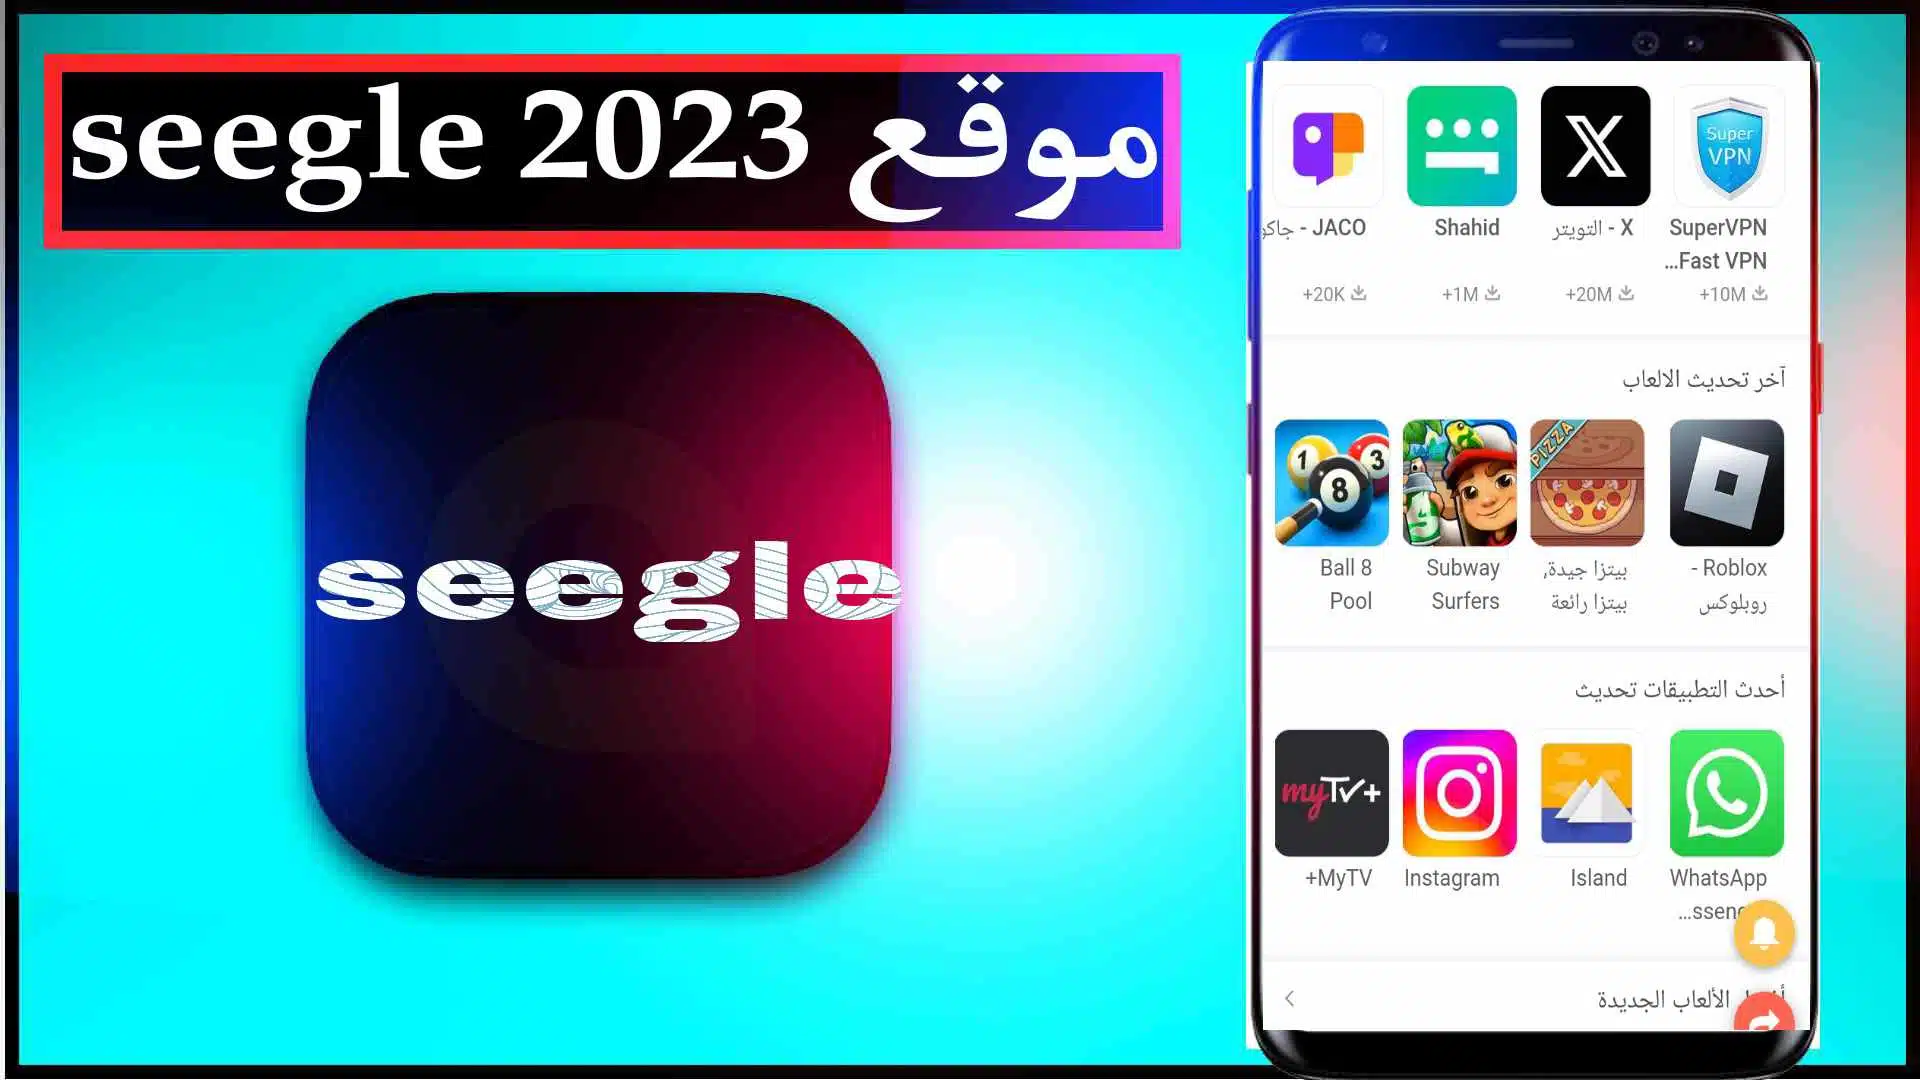 موقع seegle لتحميل الالعاب والتطبيقات المهكرة 2023 مجانا